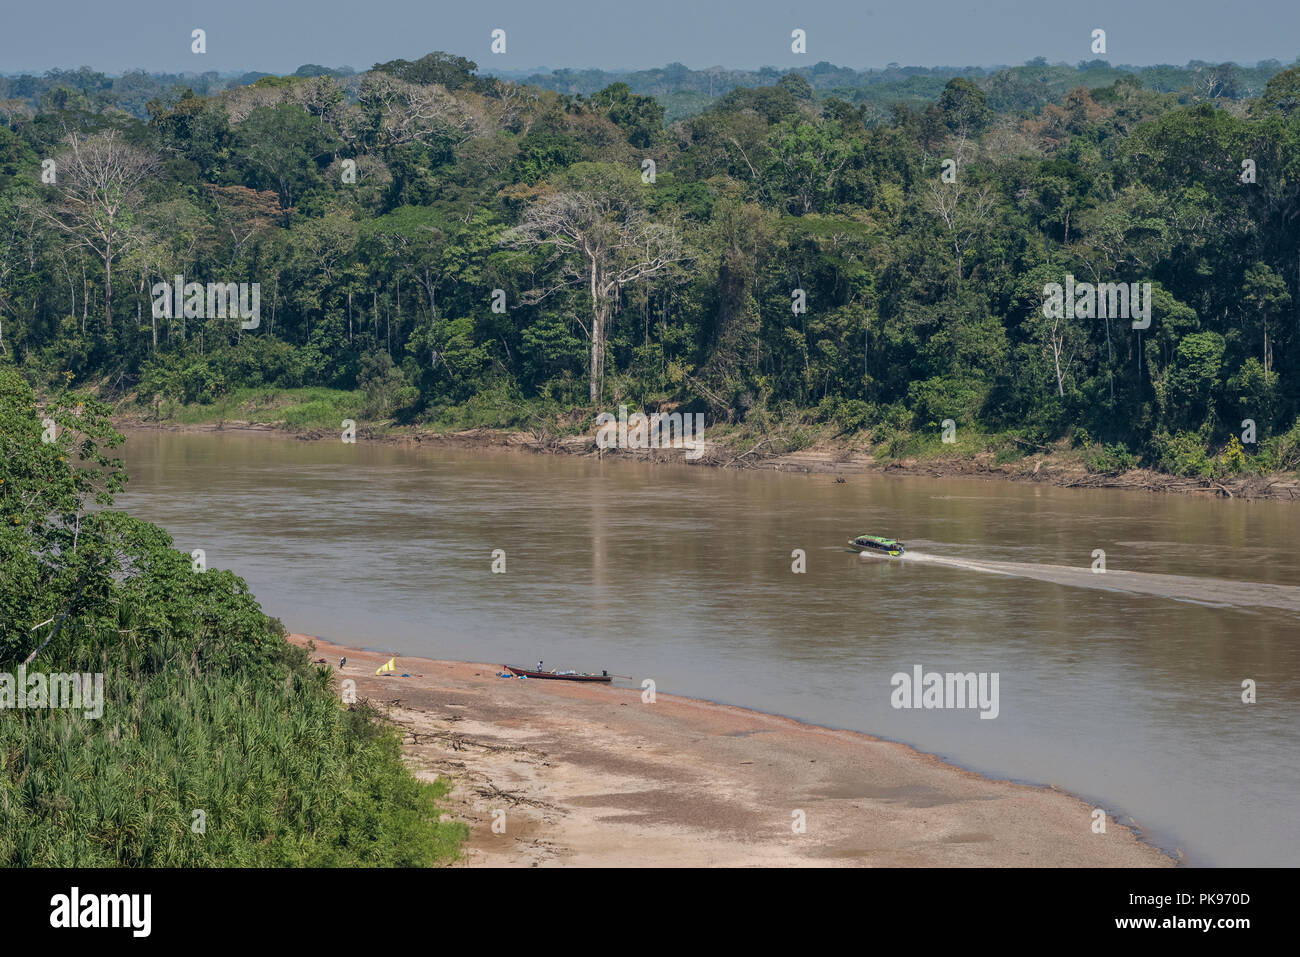 Ein Blick auf den Amazonas Dschungel in der Nähe des Madre de Dios Flusses, mehrere Boote sind sichtbar, so dass die bevorzugte Verkehrsmittel ohne Straßen. Stockfoto